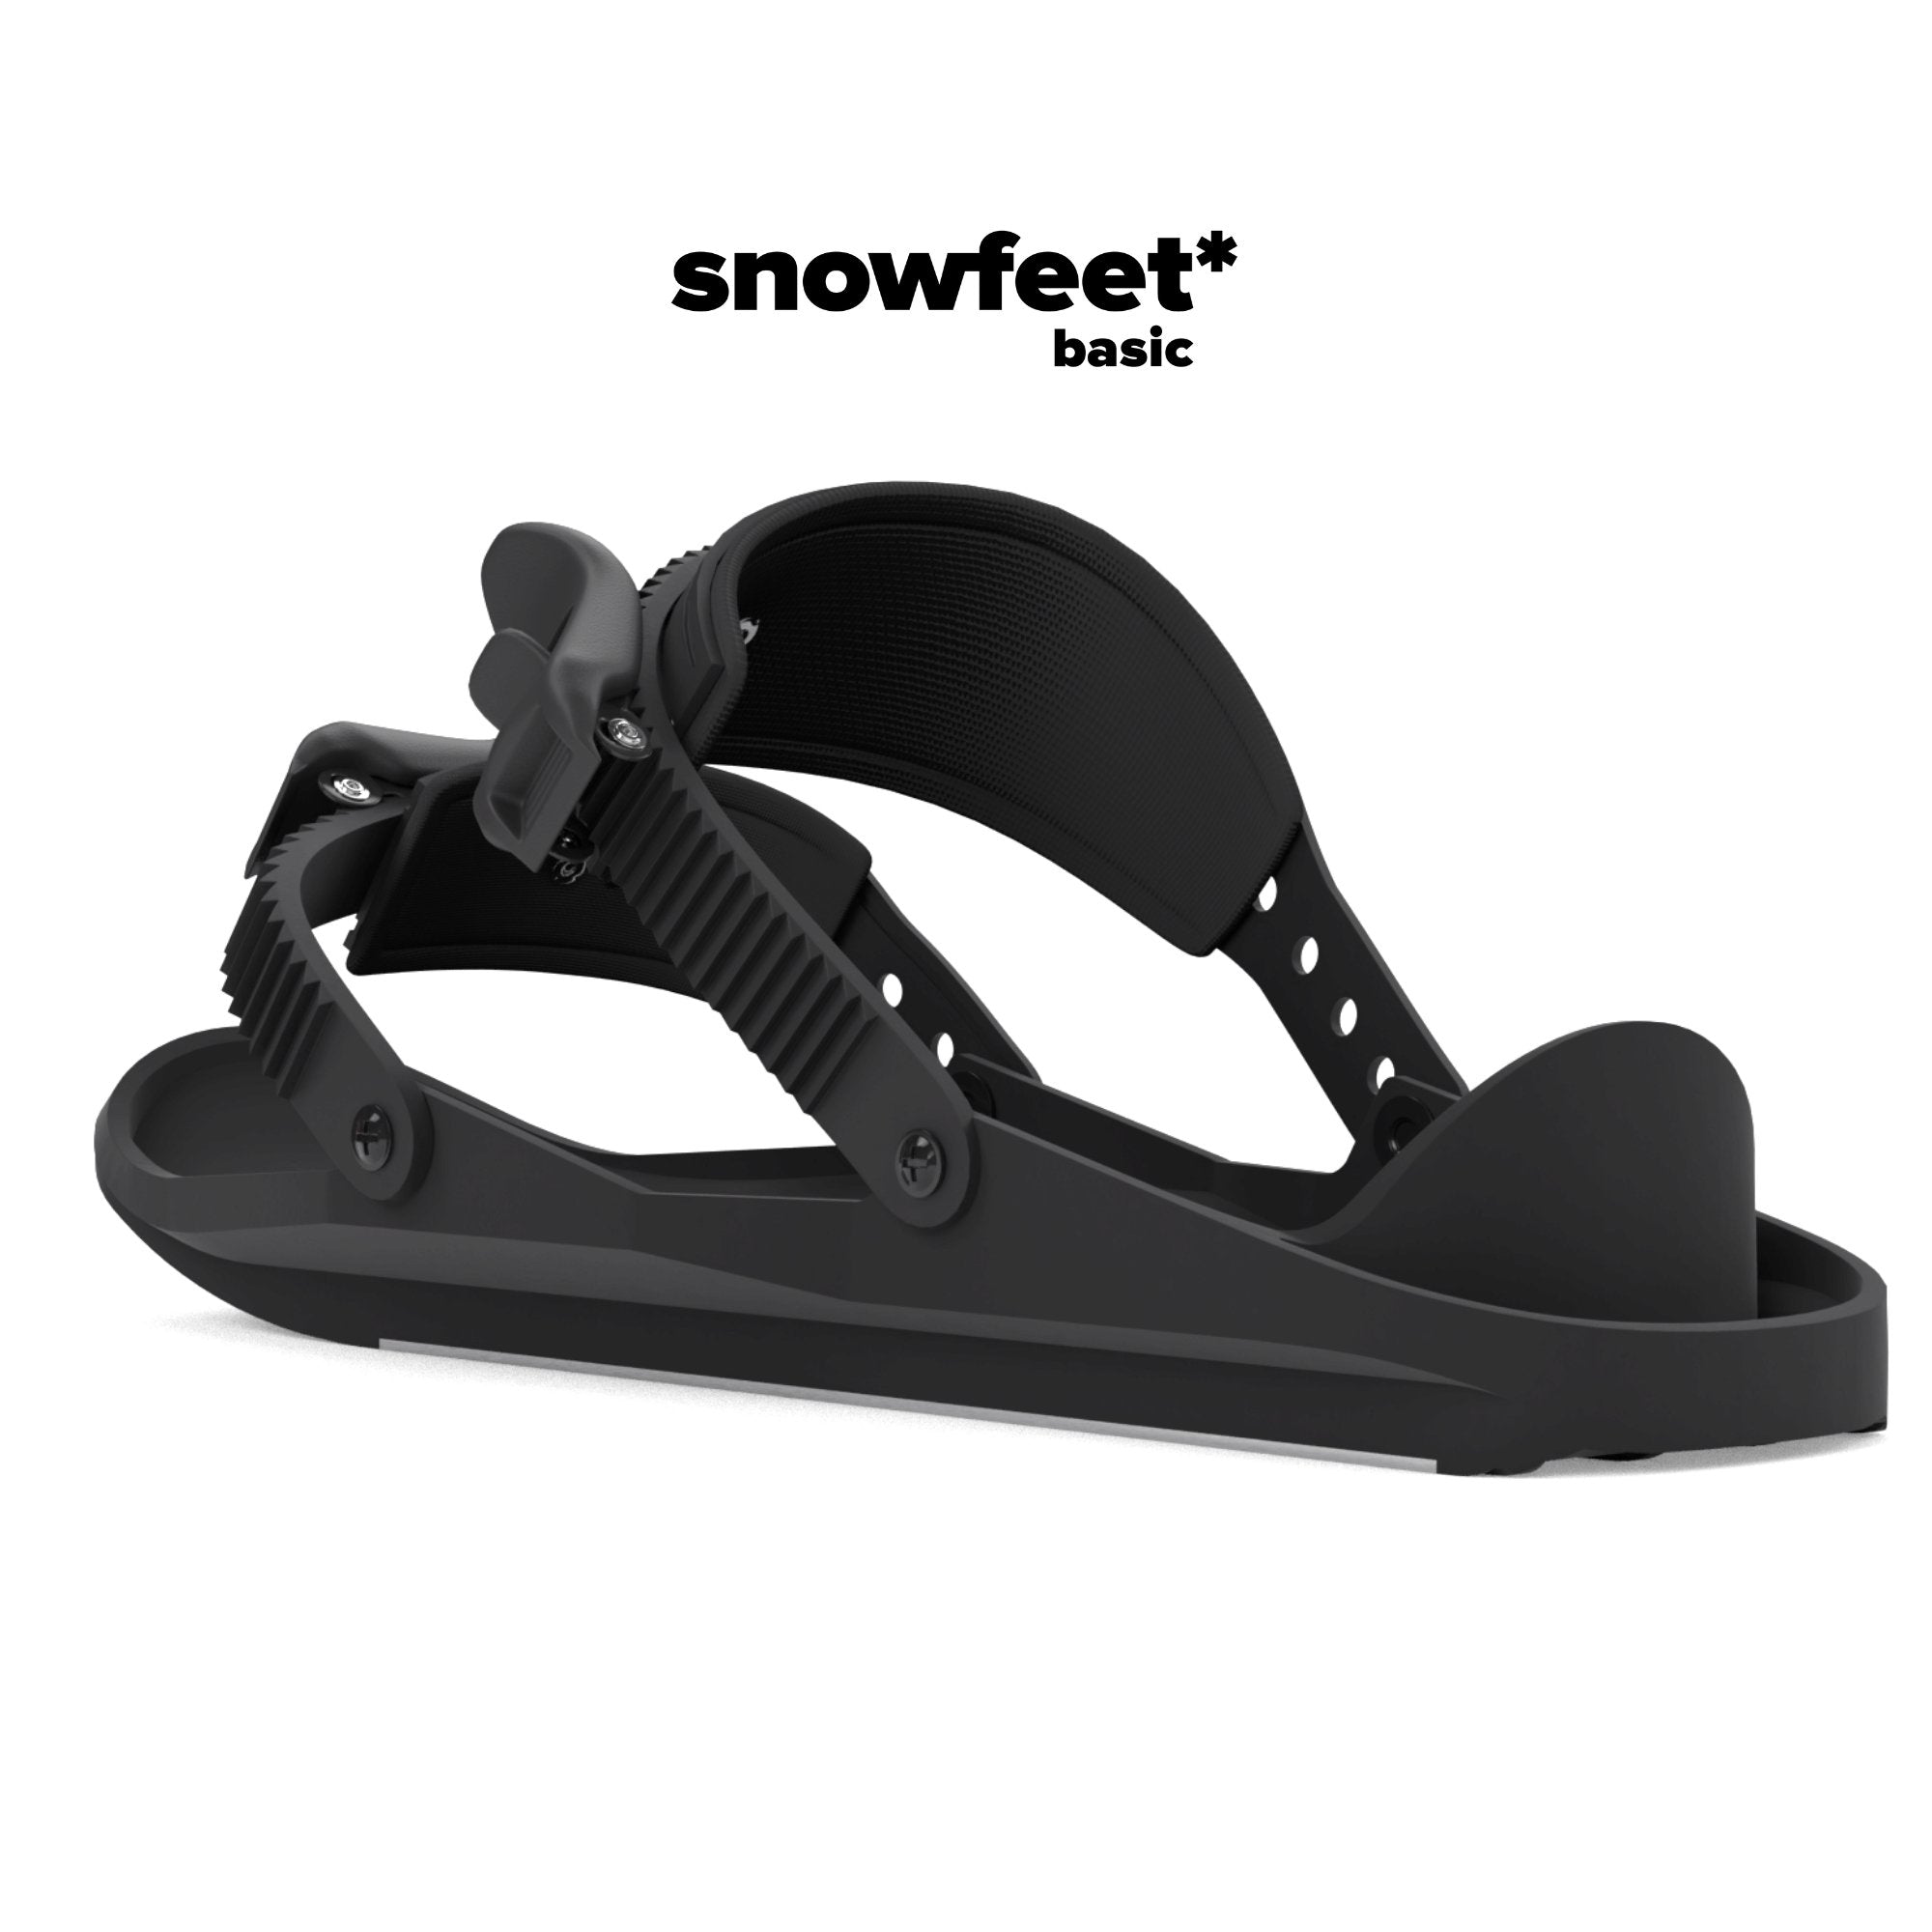 Snowfeet* Basic | Mini Ski Skates - snowfeet*